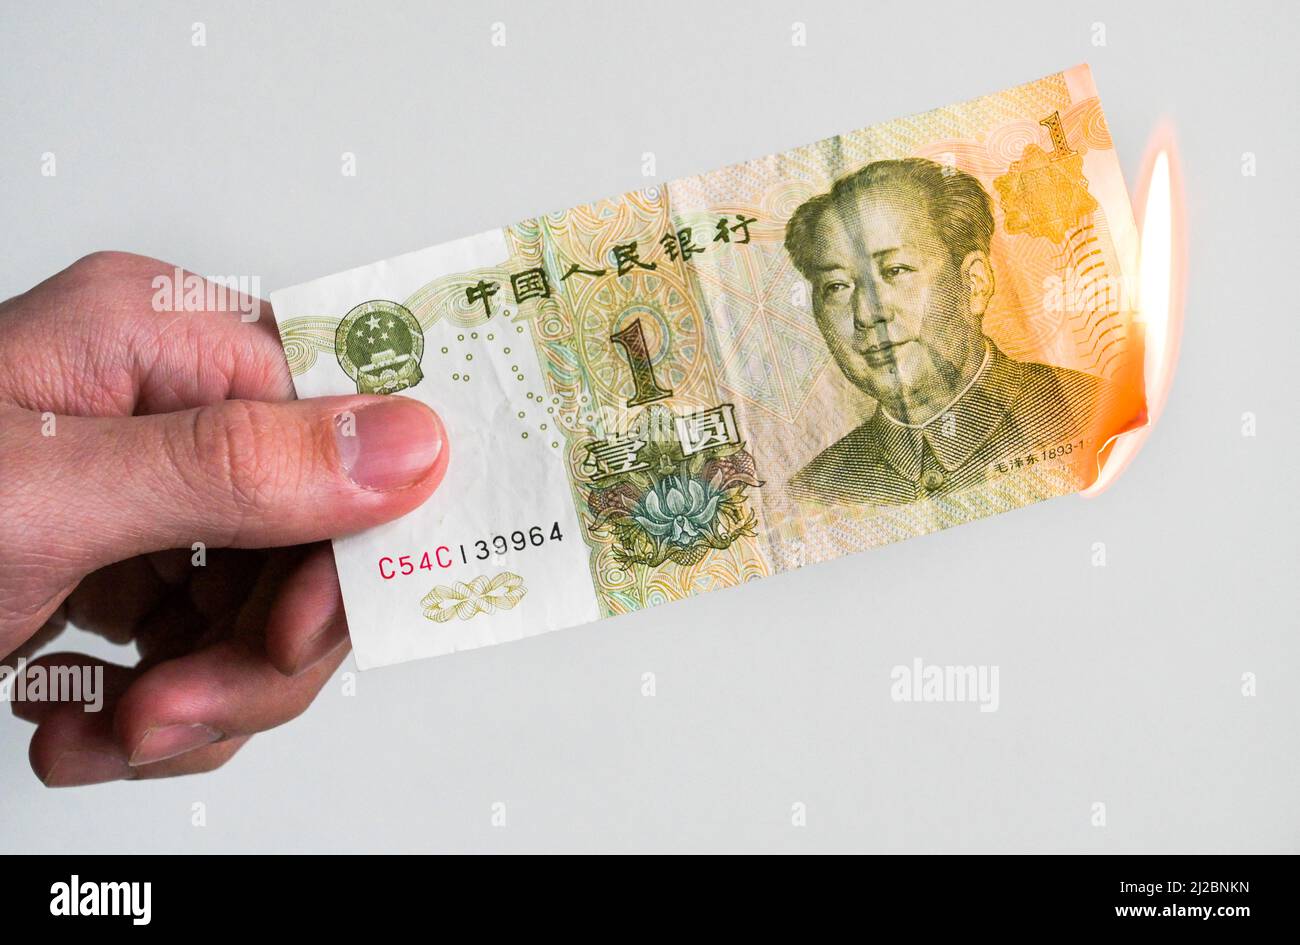 Renminbi, verbrennen, Feuer, chinesische Banknote, Geldschein, Studioaufnahme Stock Photo